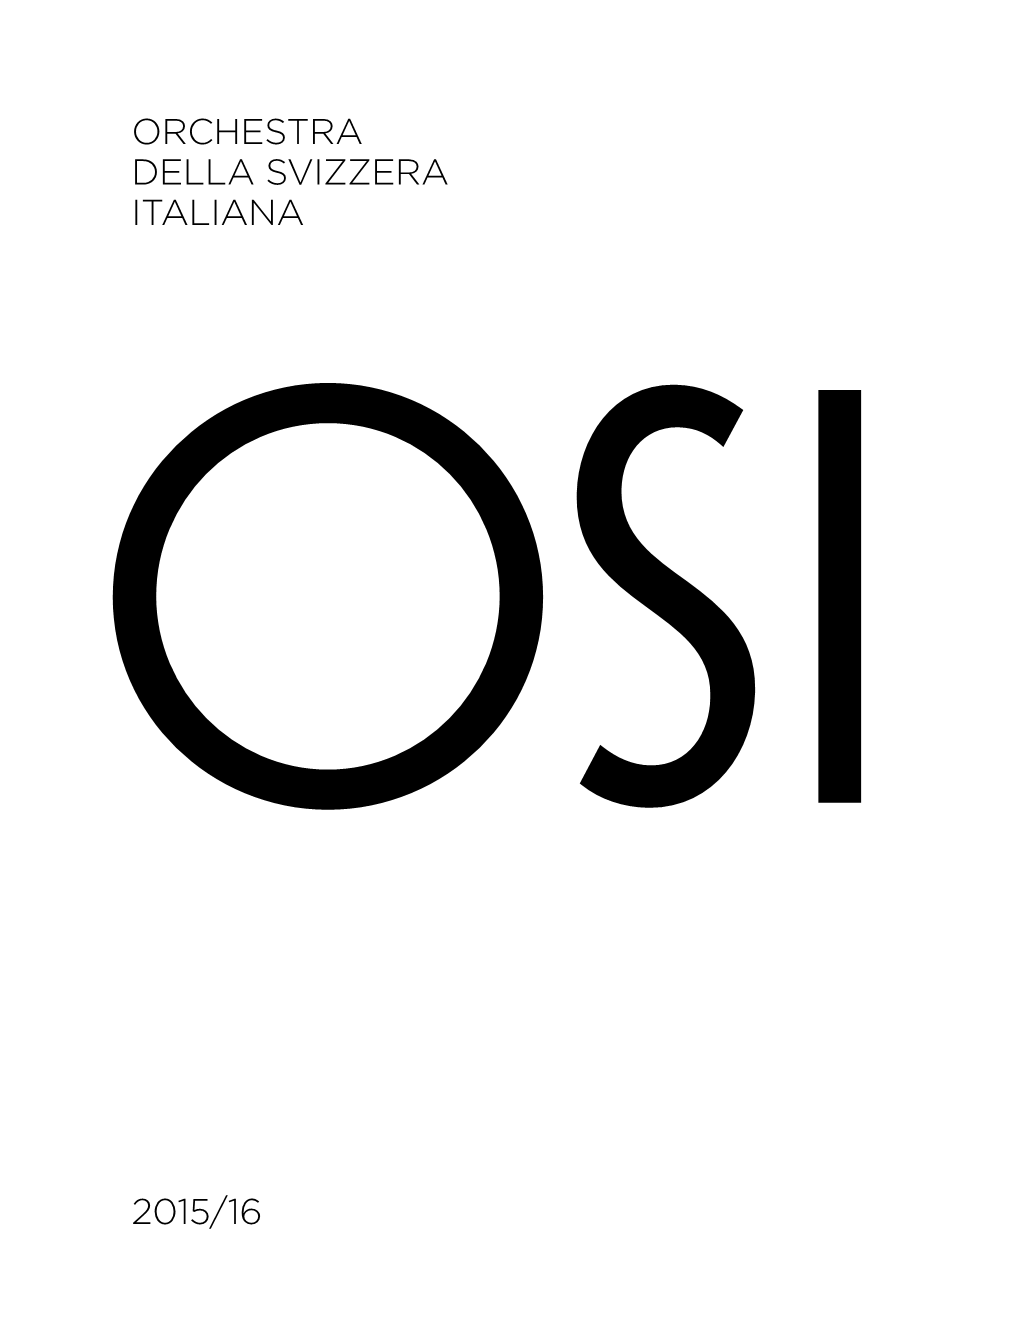 Orchestra Della Svizzera Italiana 2015/16